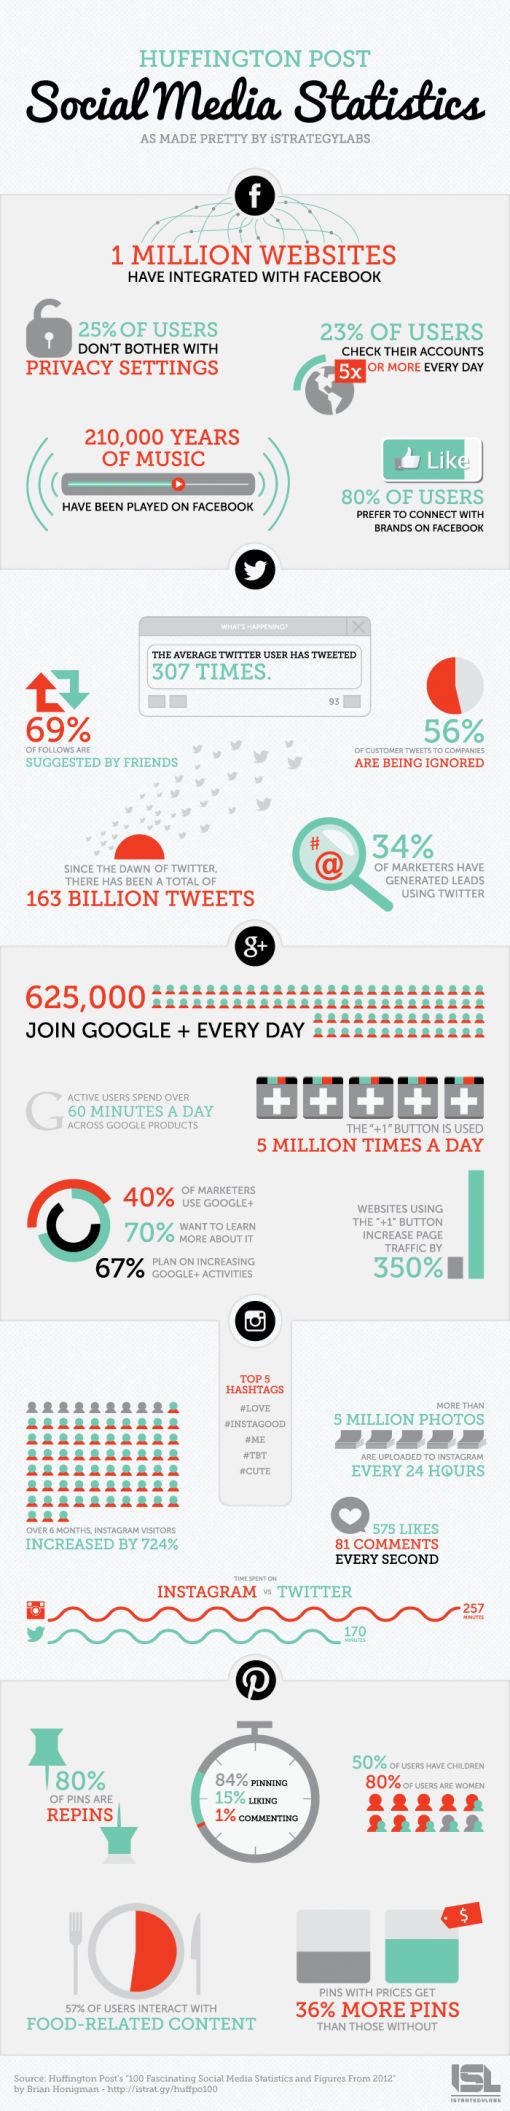 social-media-stats-2012-2.jpg